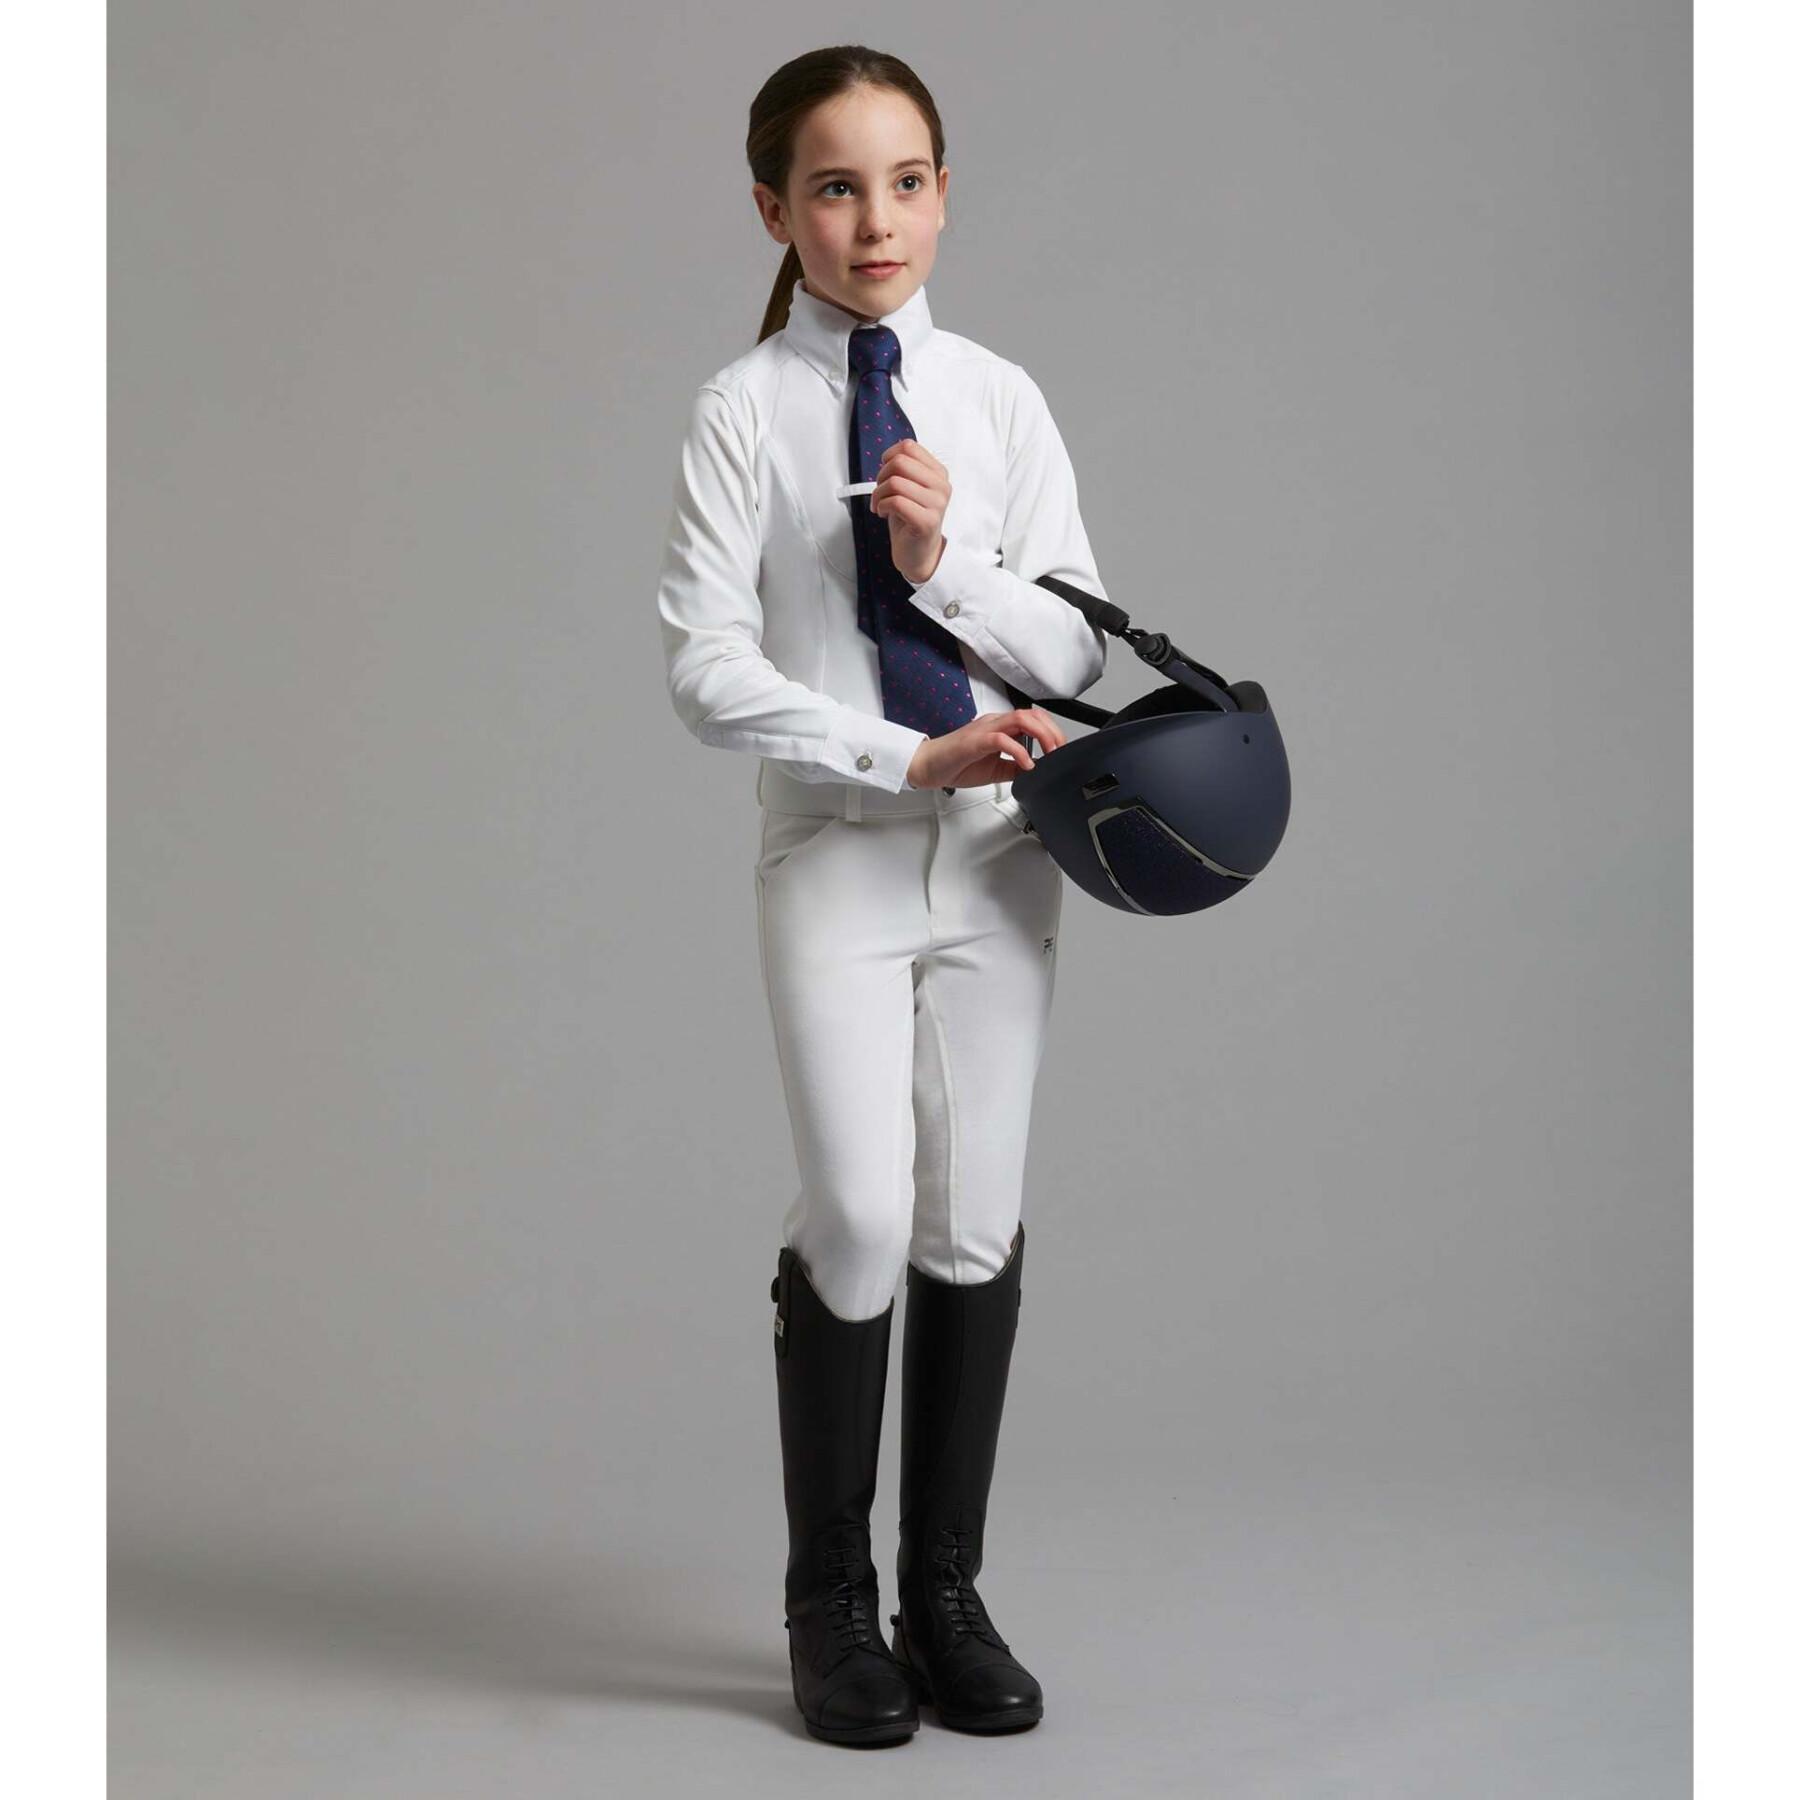 Camisa de equitación de competición infantil Premier Equine Tessa